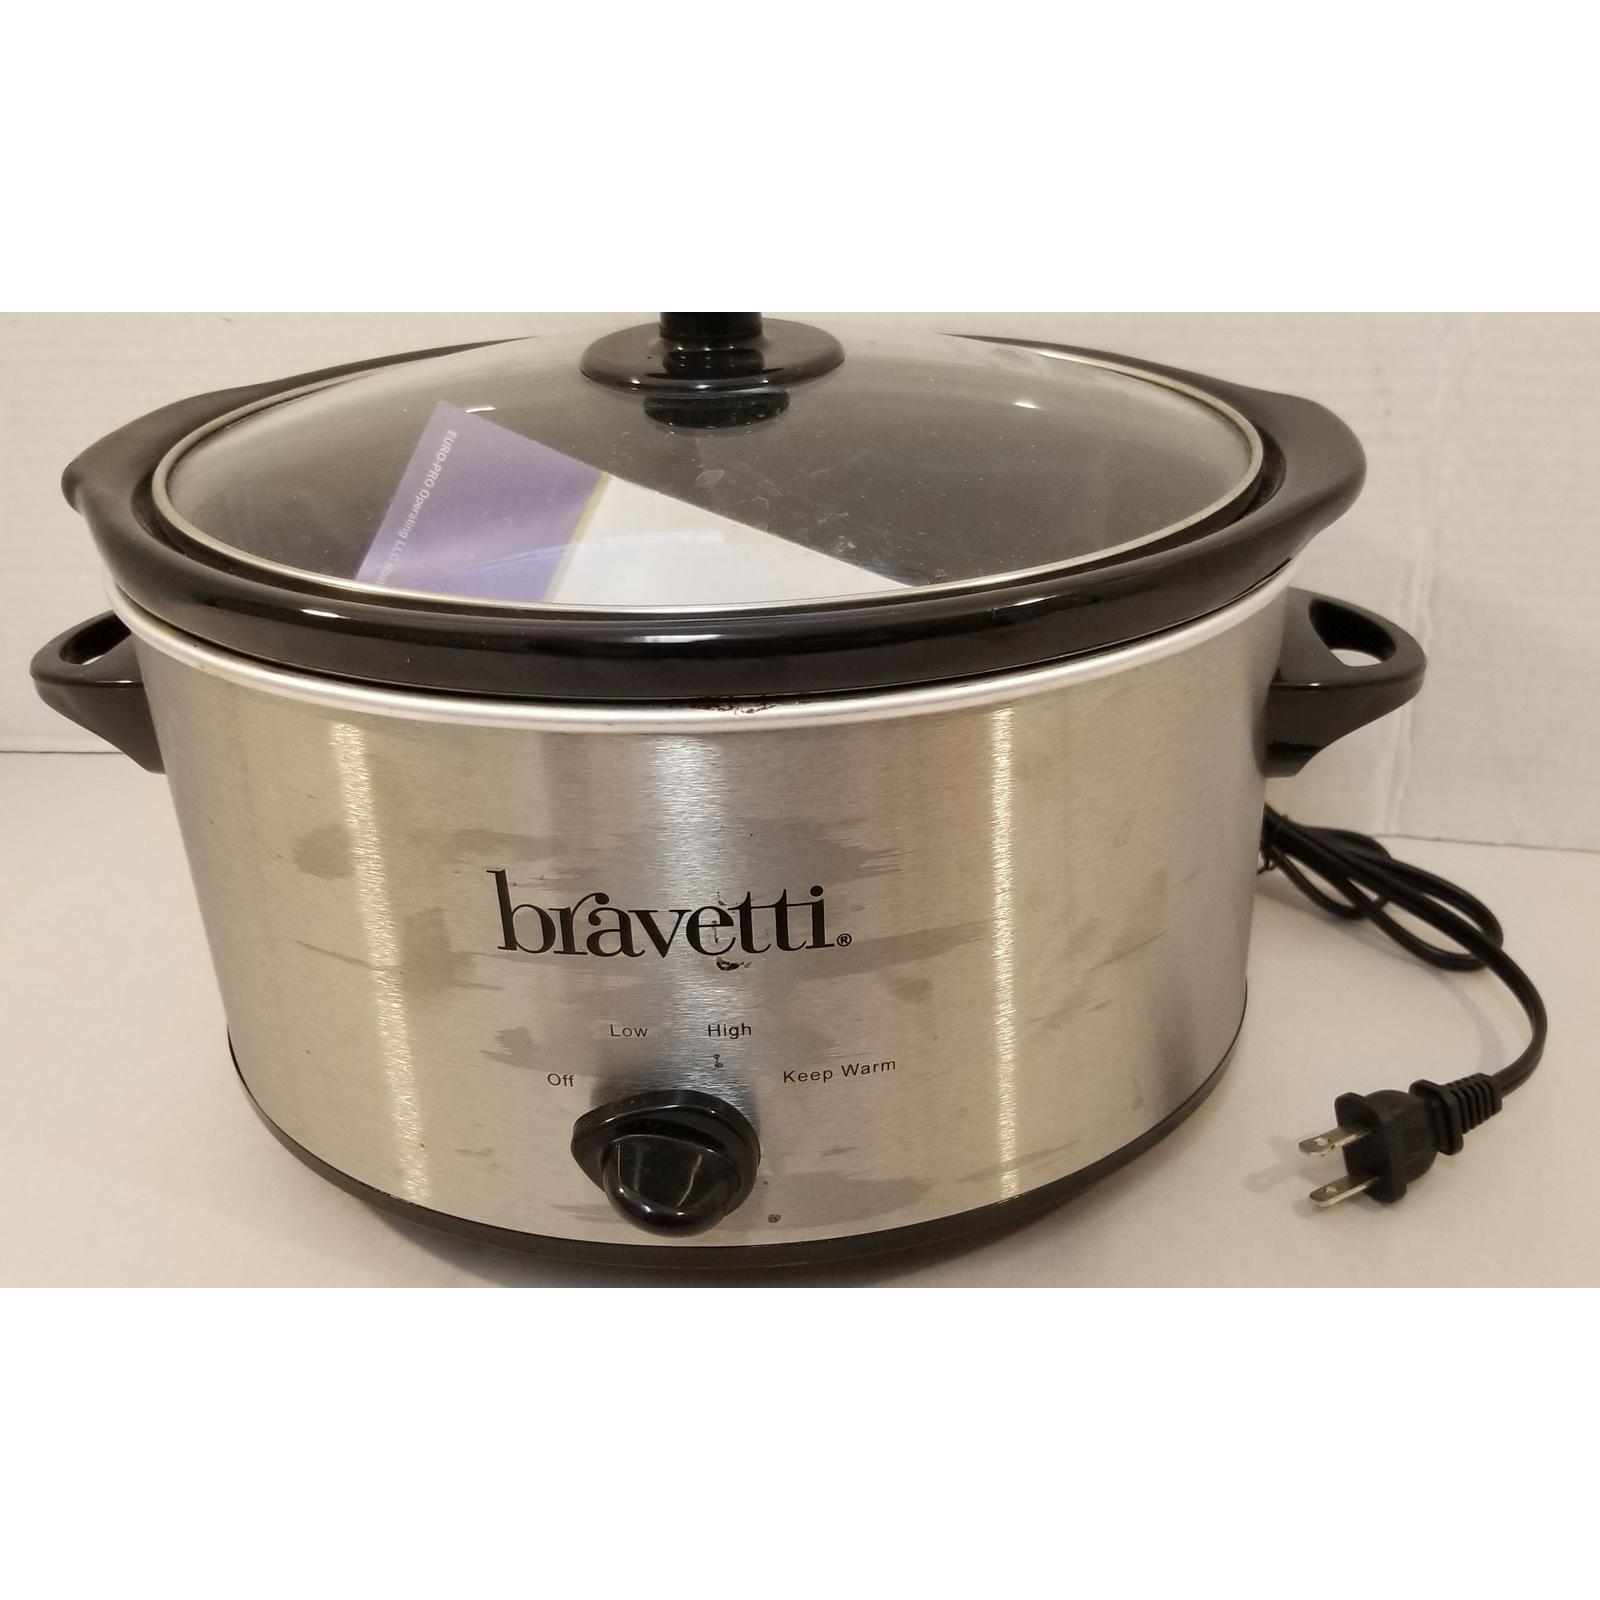 BRAVETTI Crock-Pot 4 Quart Slow Cooker - Black (KC241B).